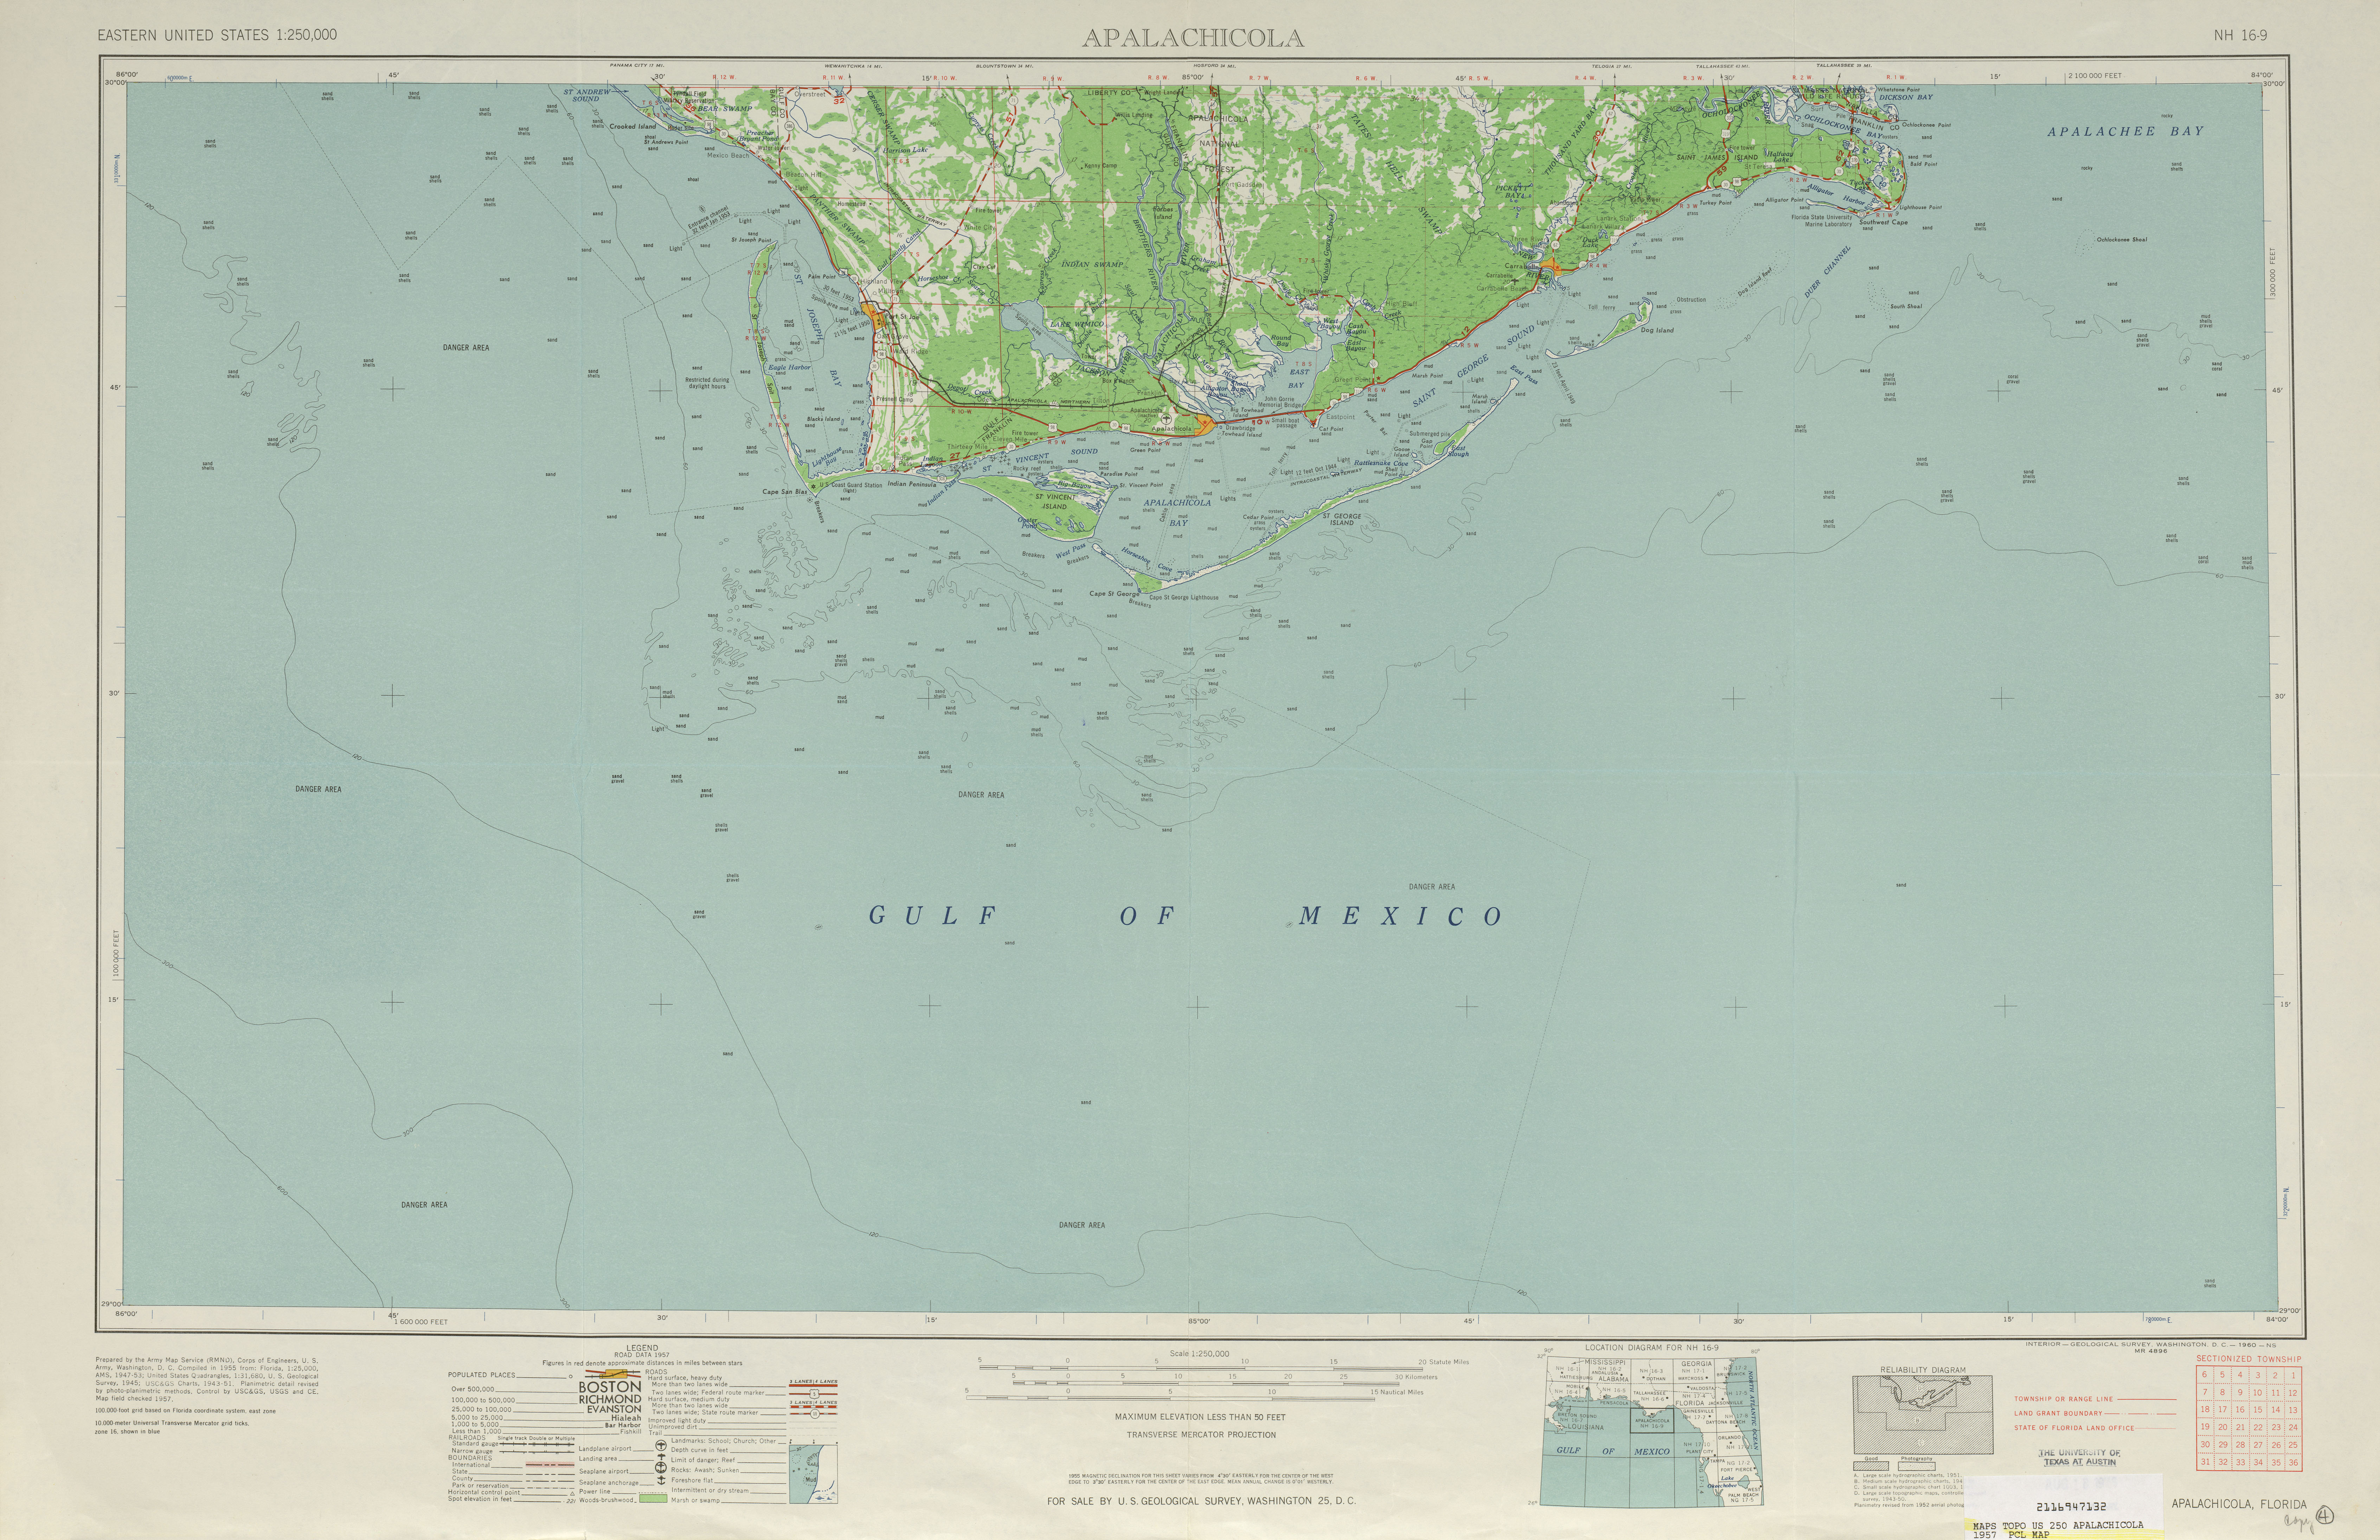 Hoja Apalachicola del Mapa Topográfico de los Estados Unidos 1957